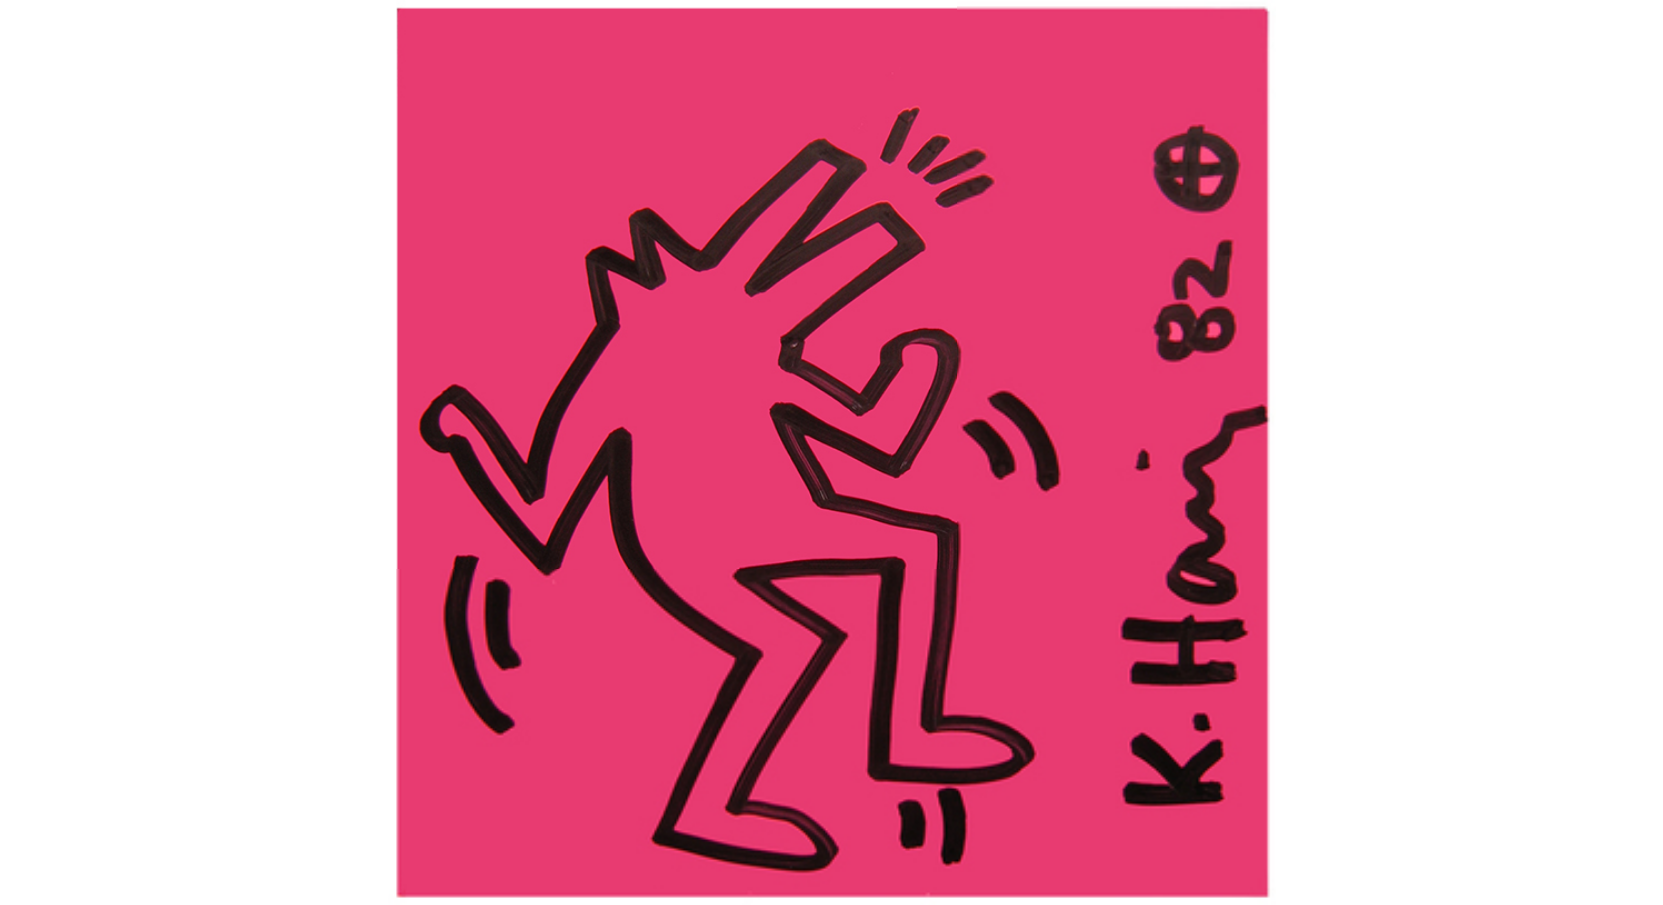 keith-haris-desenho-nova-york-anos-80-aids-dionisio-arte (17)